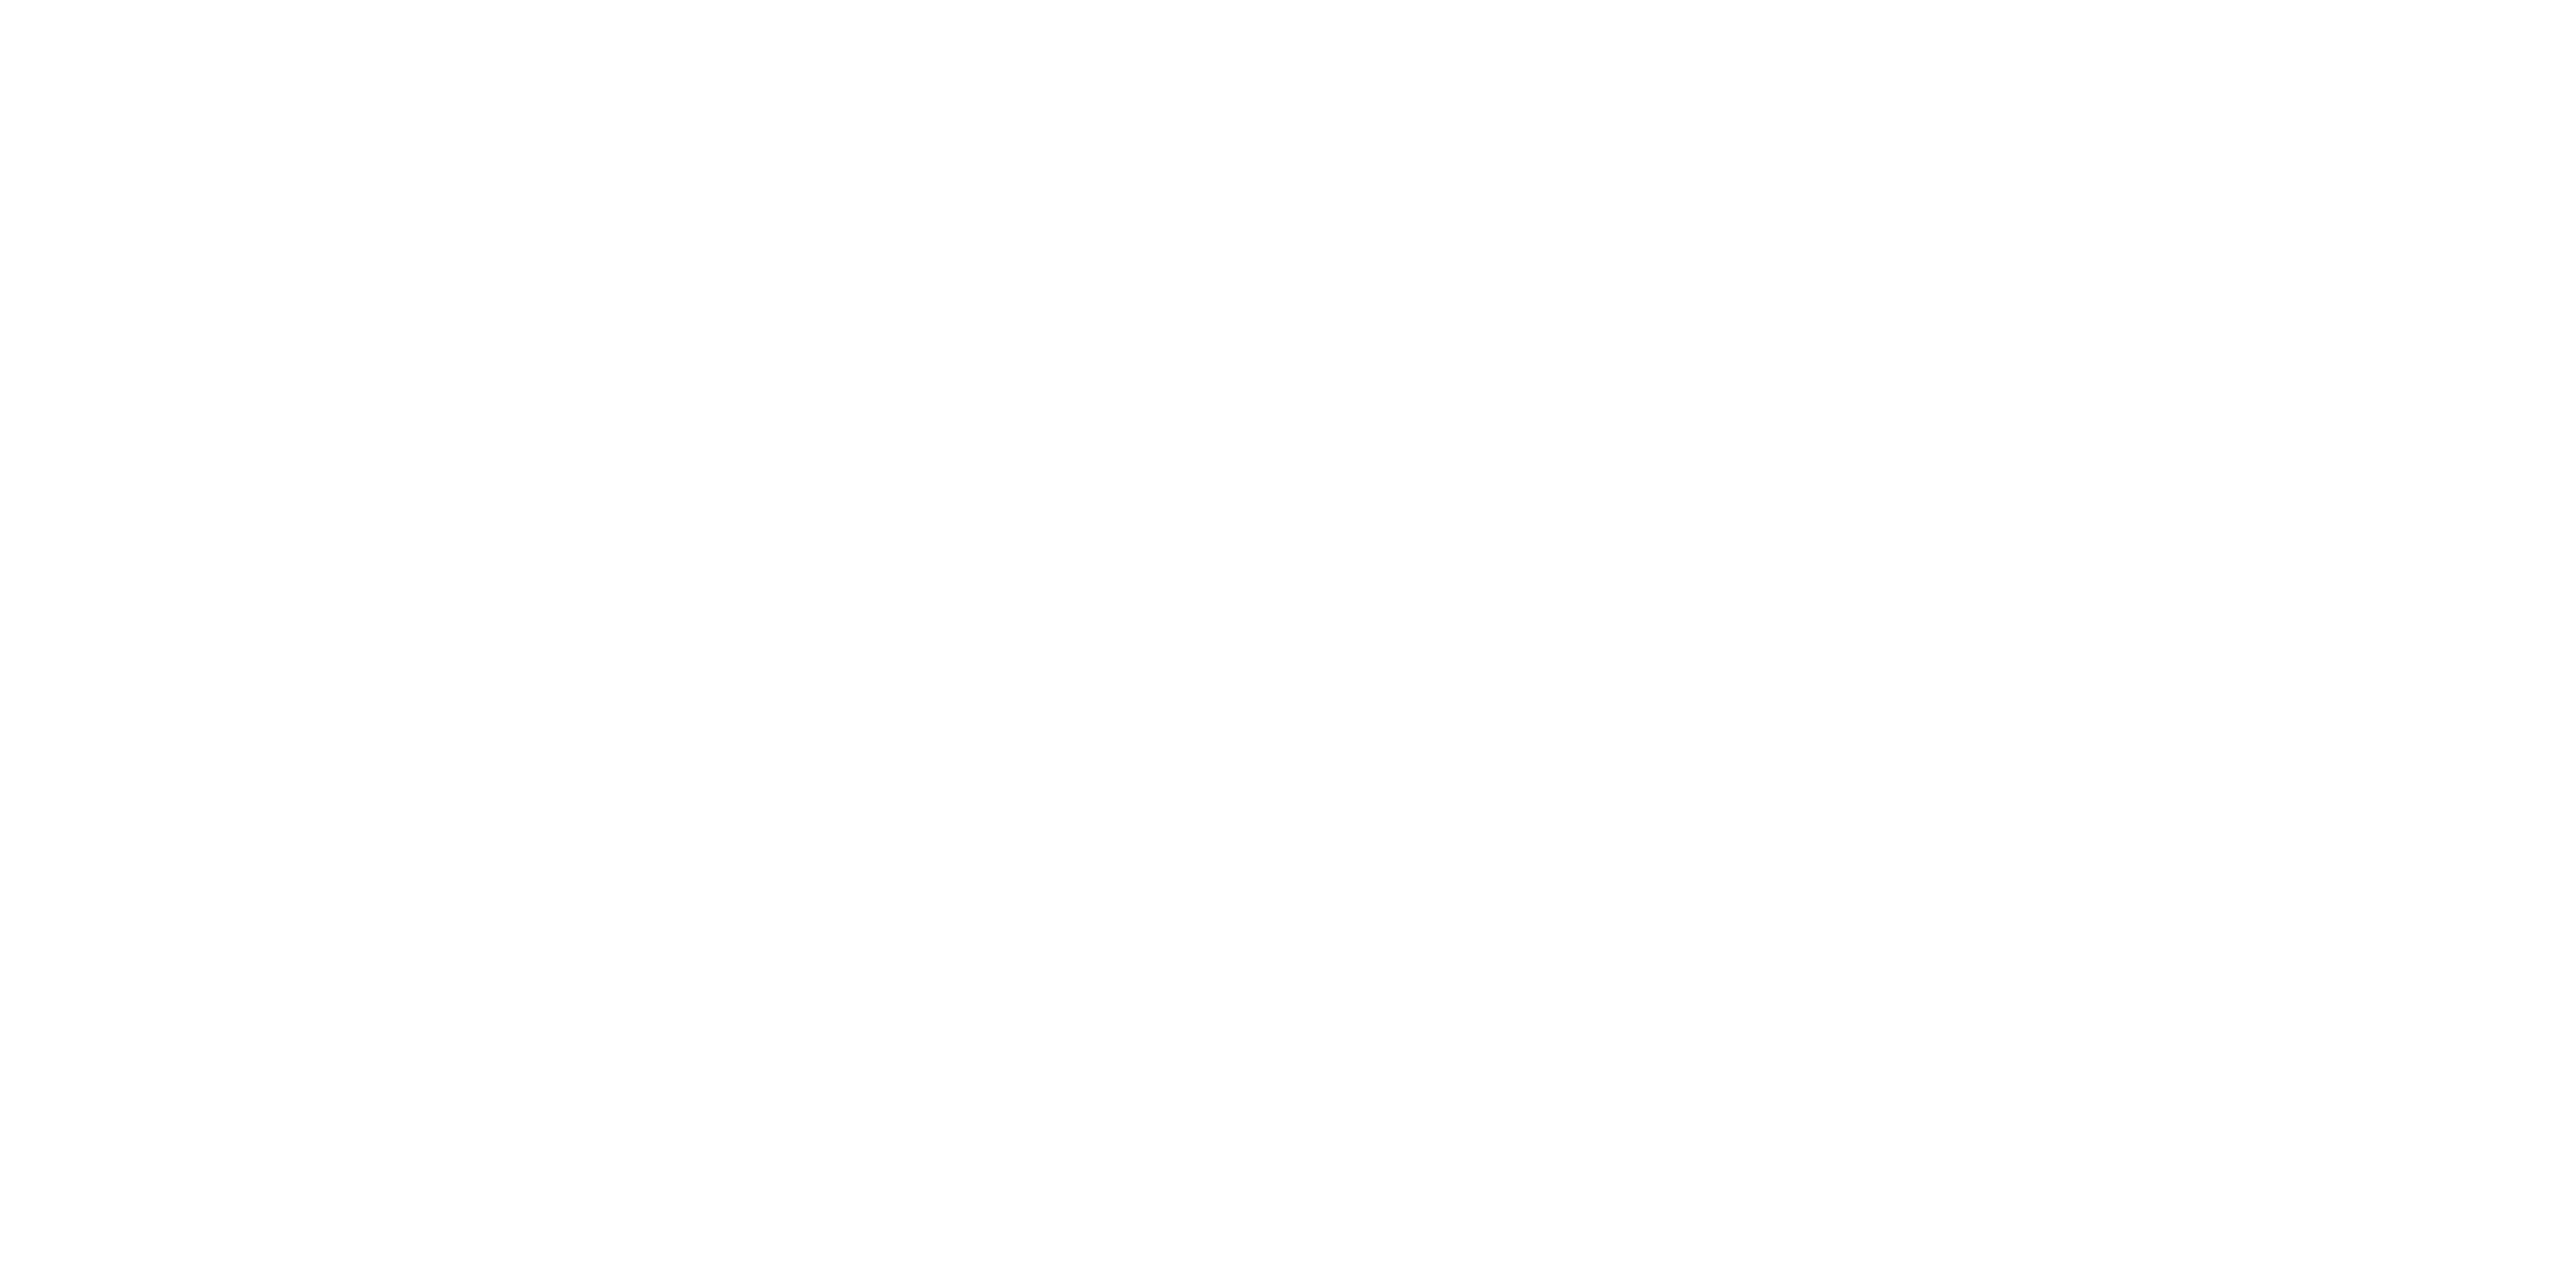 Cyberoo